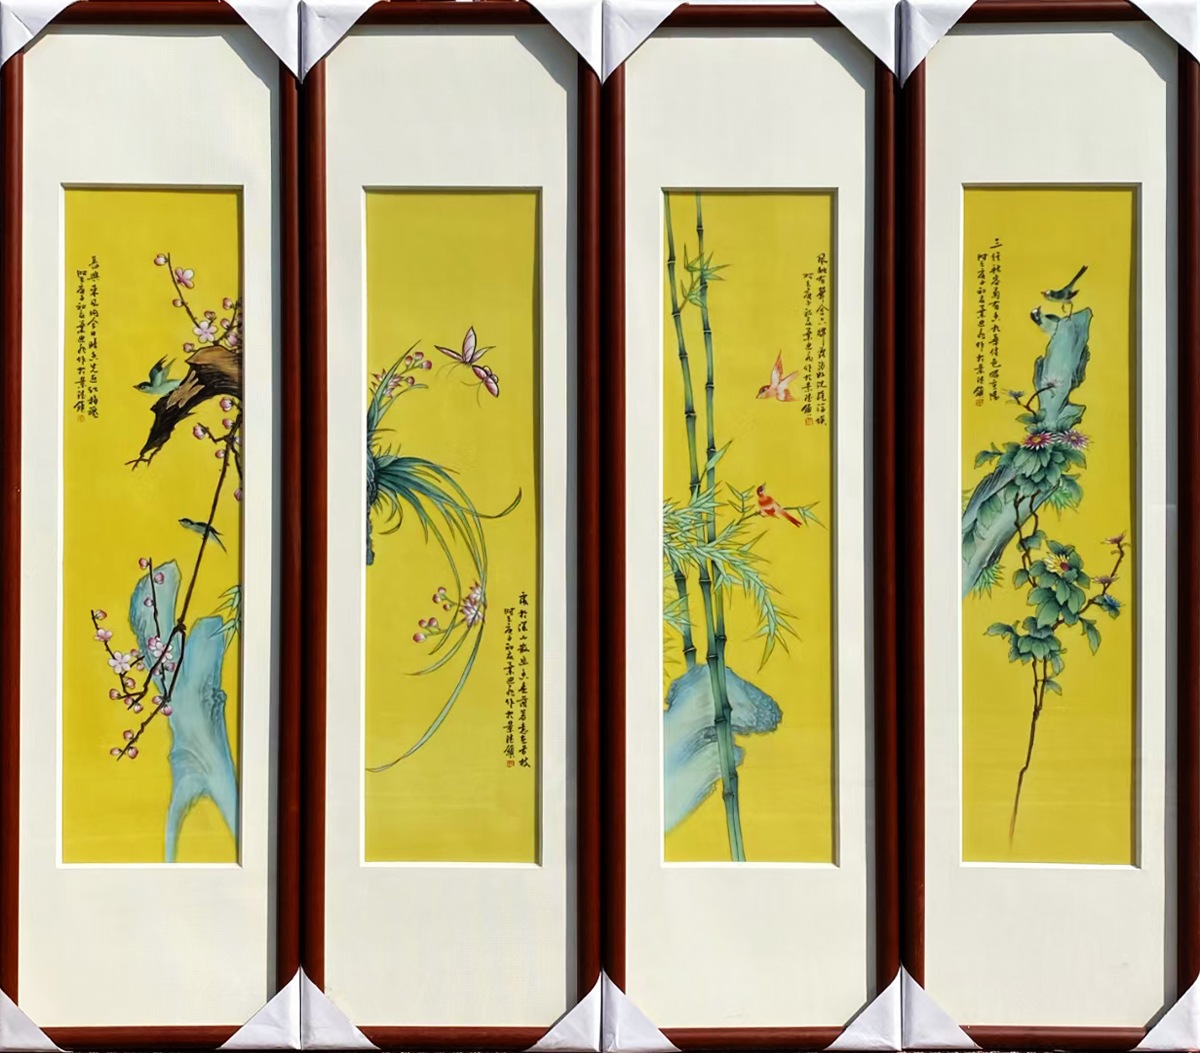 名家手绘黄底梅兰竹菊四条屏瓷板画(图2)